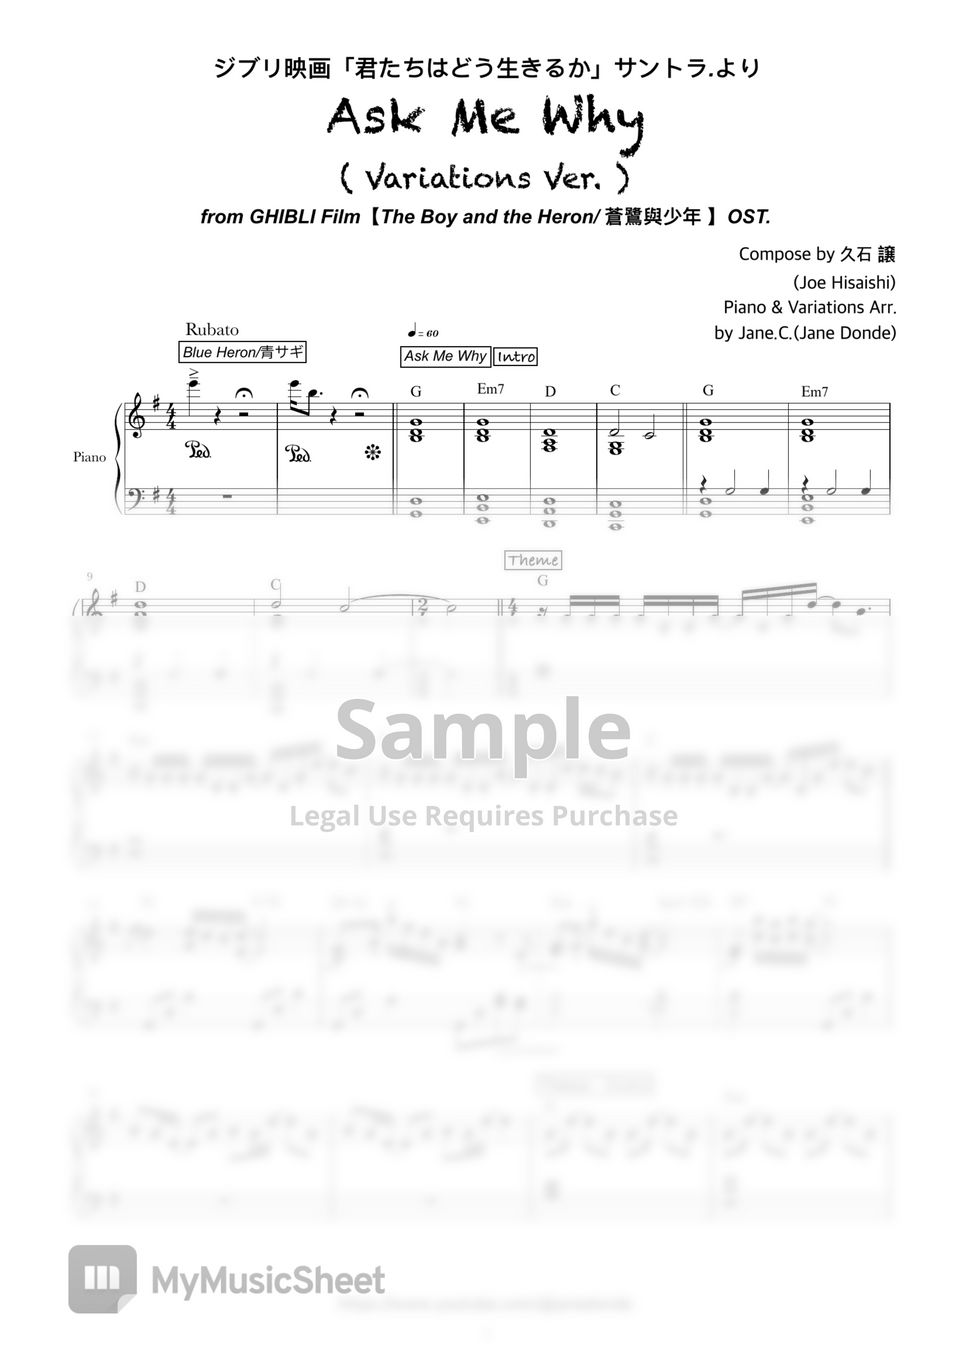 久石 譲(Joe Hisaishi ) - 【 Ask Me Why 】- (Variations Ver.) (GHIBLI Film -The Boy and the Heron OST. *Bonus: 《Concert Ver.》 Music sheets～) by Jane.C.(Jane Donde)